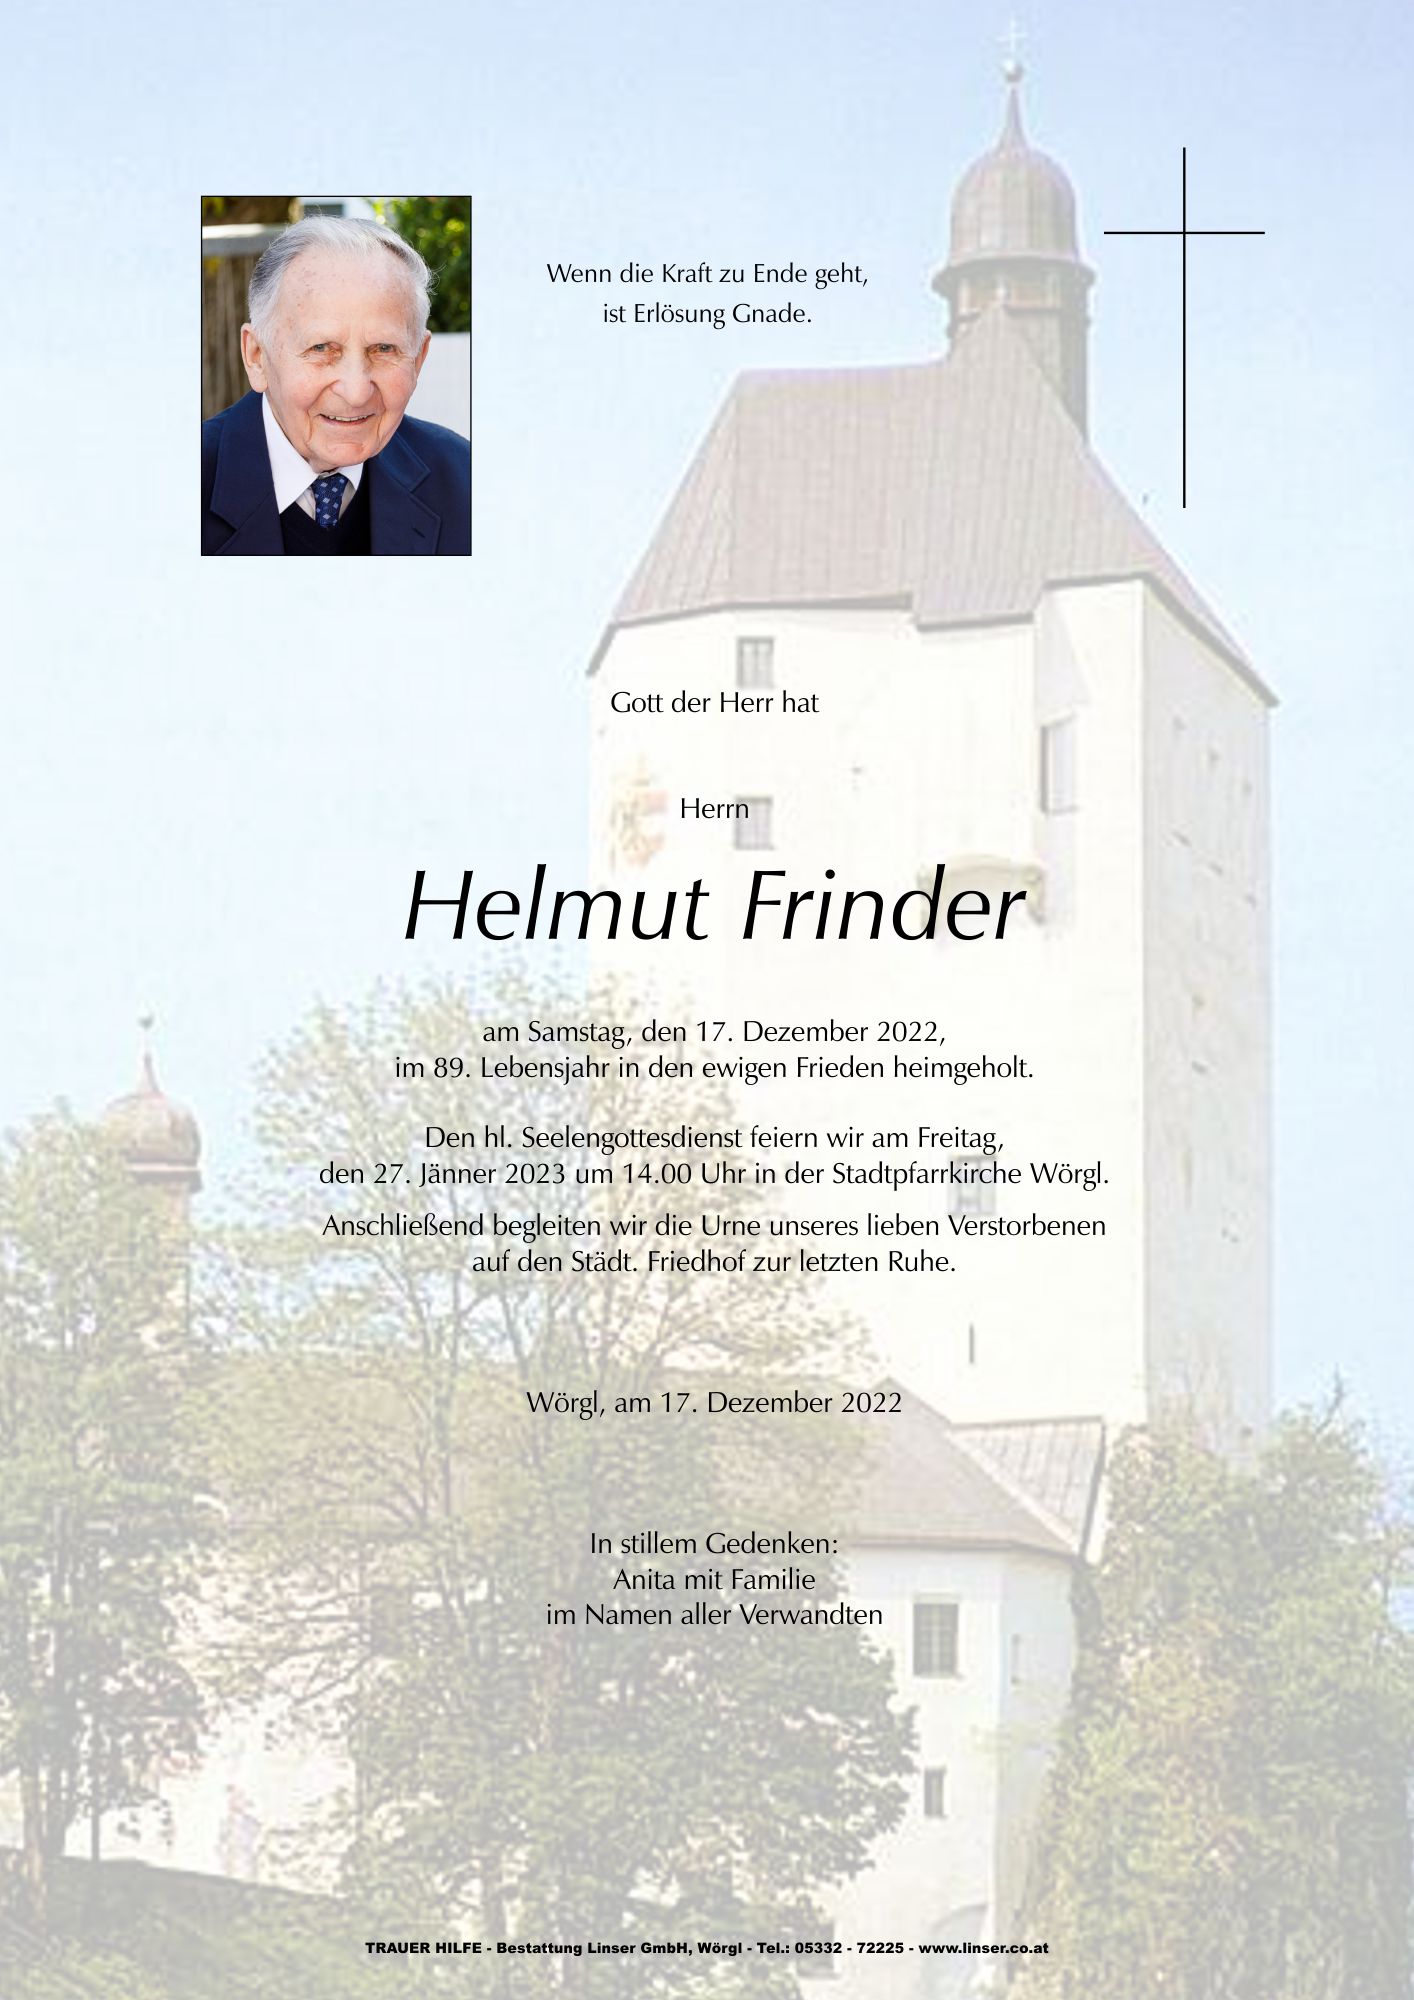 Helmut Frinder